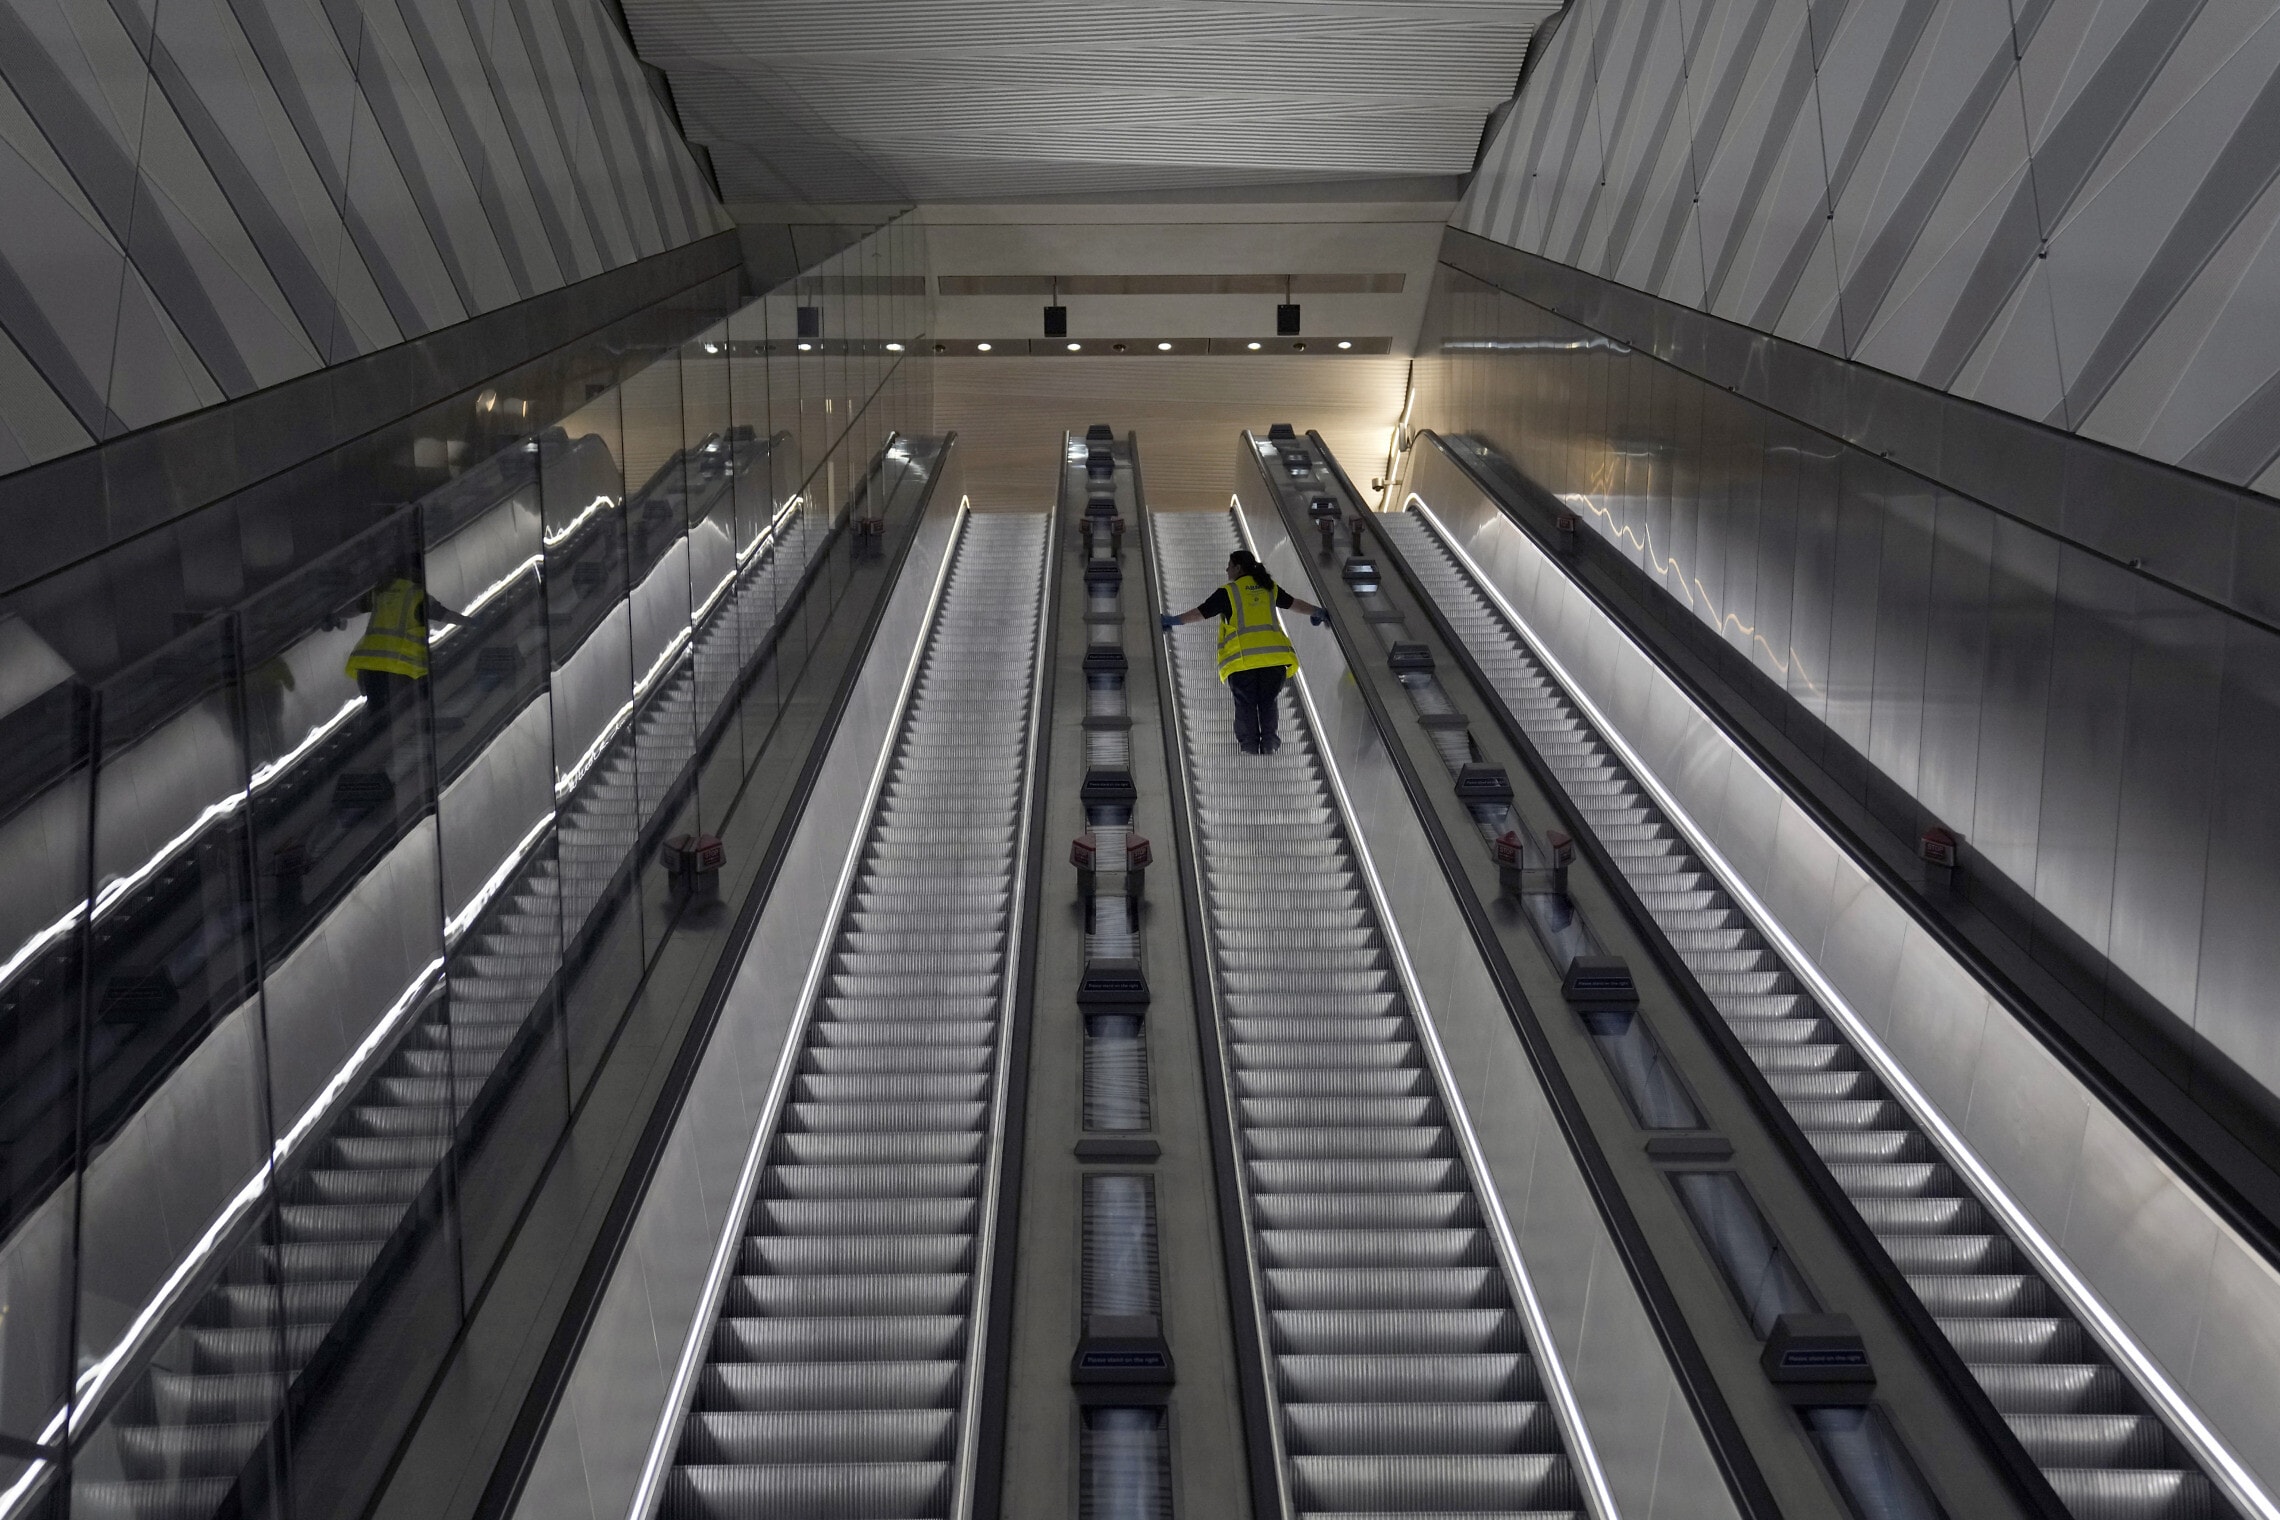 מדרגות נעות בתחנת ליברפול סטריט בקו אליזבת החדש בלונדון, 11 במאי 2022 (צילום: AP Photo/Alastair Grant)